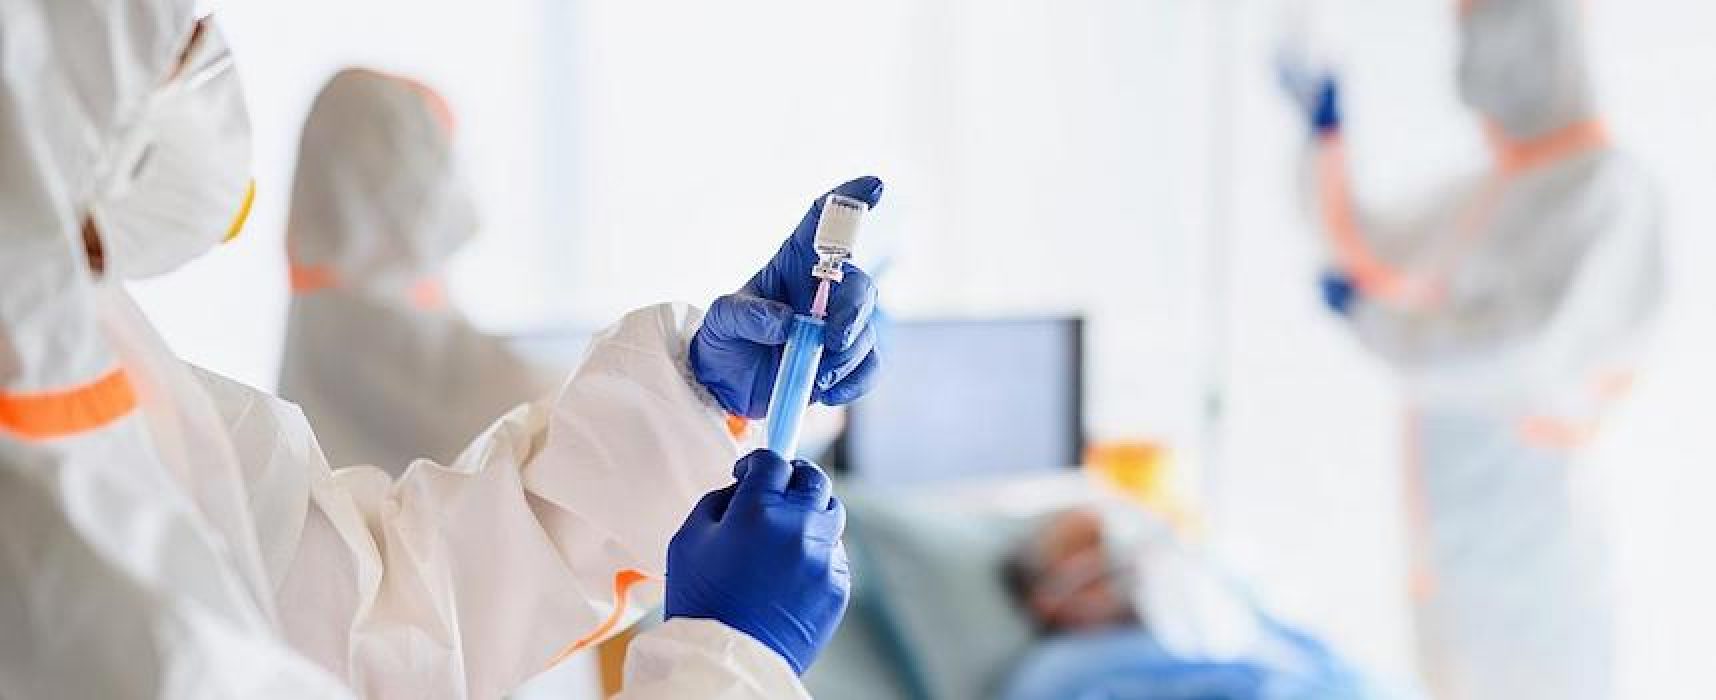 Coronavirus: oltre 200 ricoverati in reparti ordinari, 5 morti in Puglia nelle ultime ore